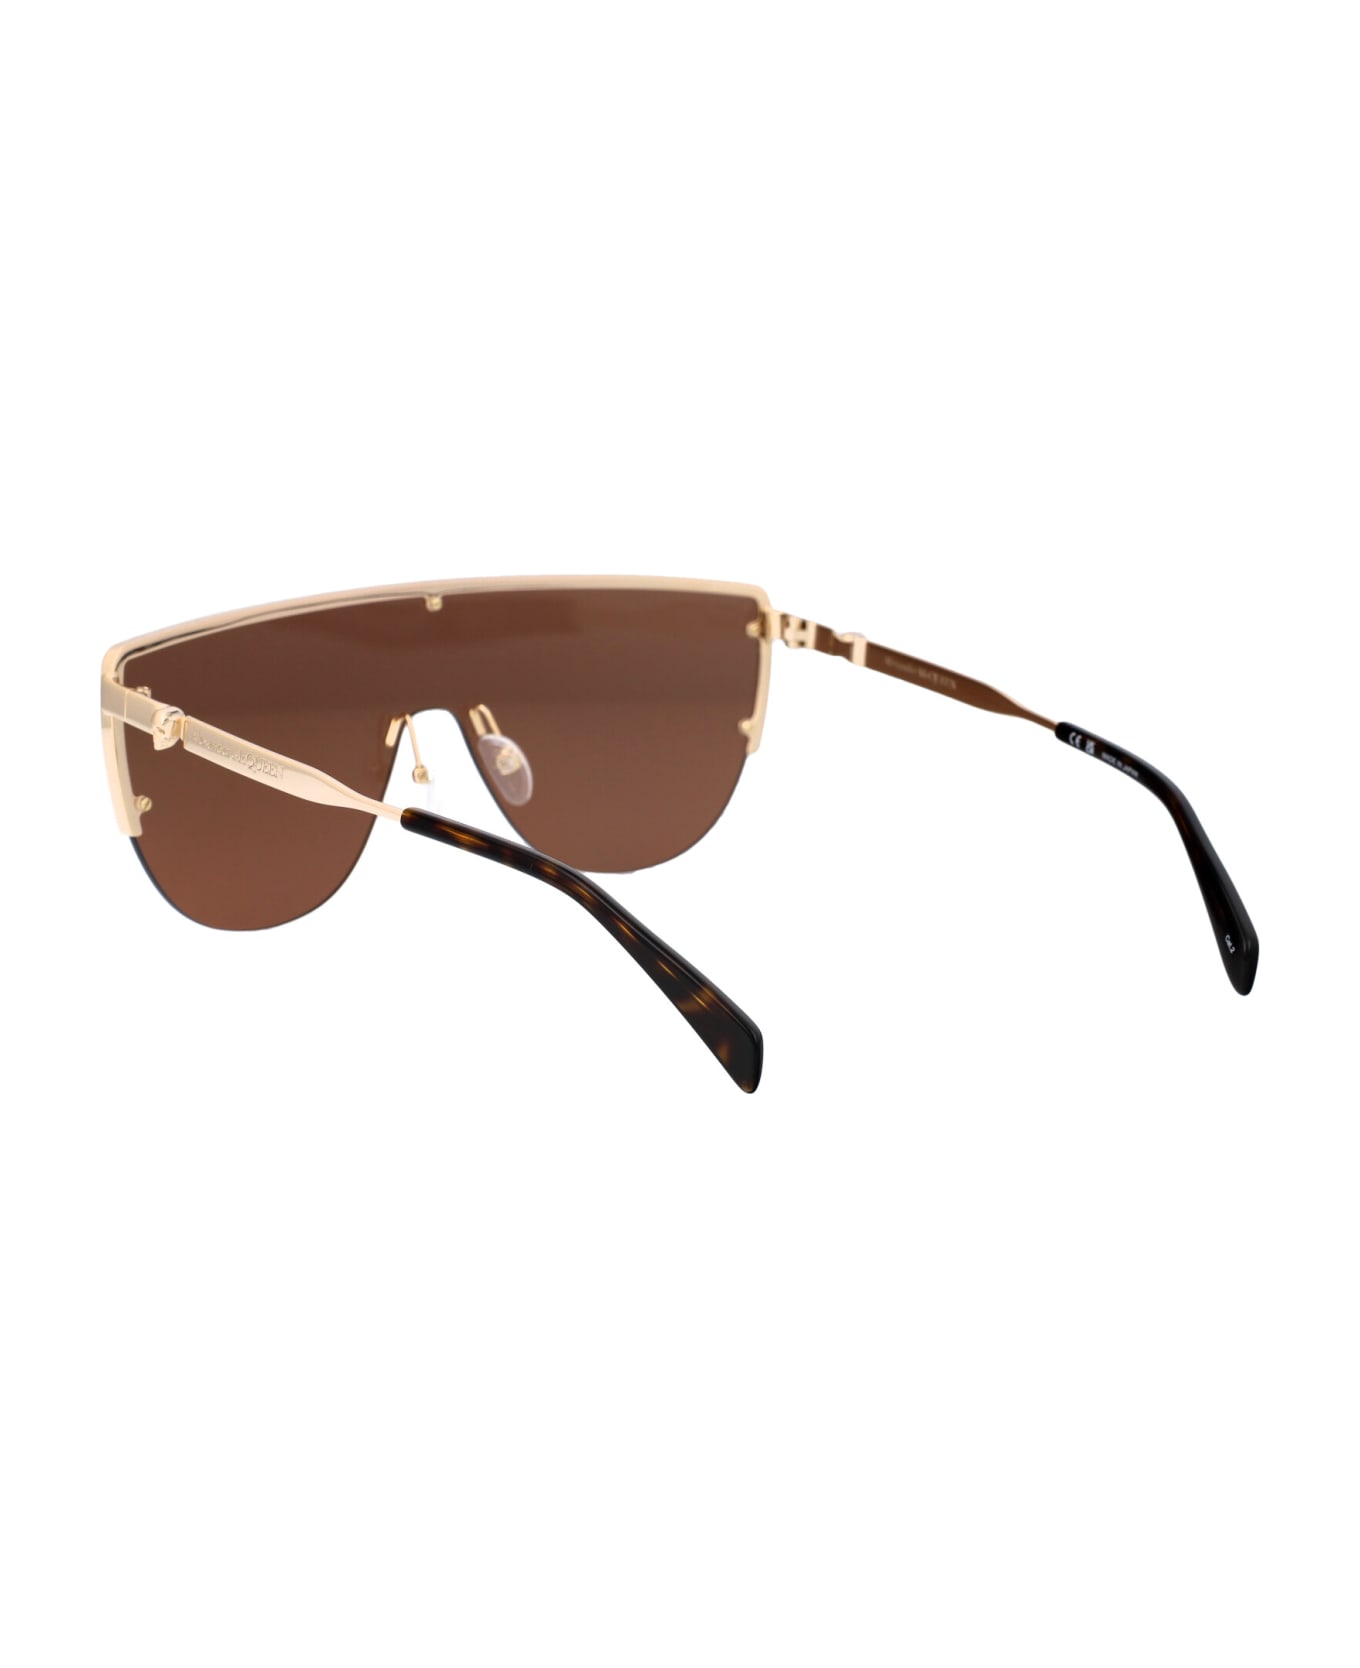 Alexander McQueen Eyewear Am0457s Sunglasses - 002 GOLD GOLD BROWN